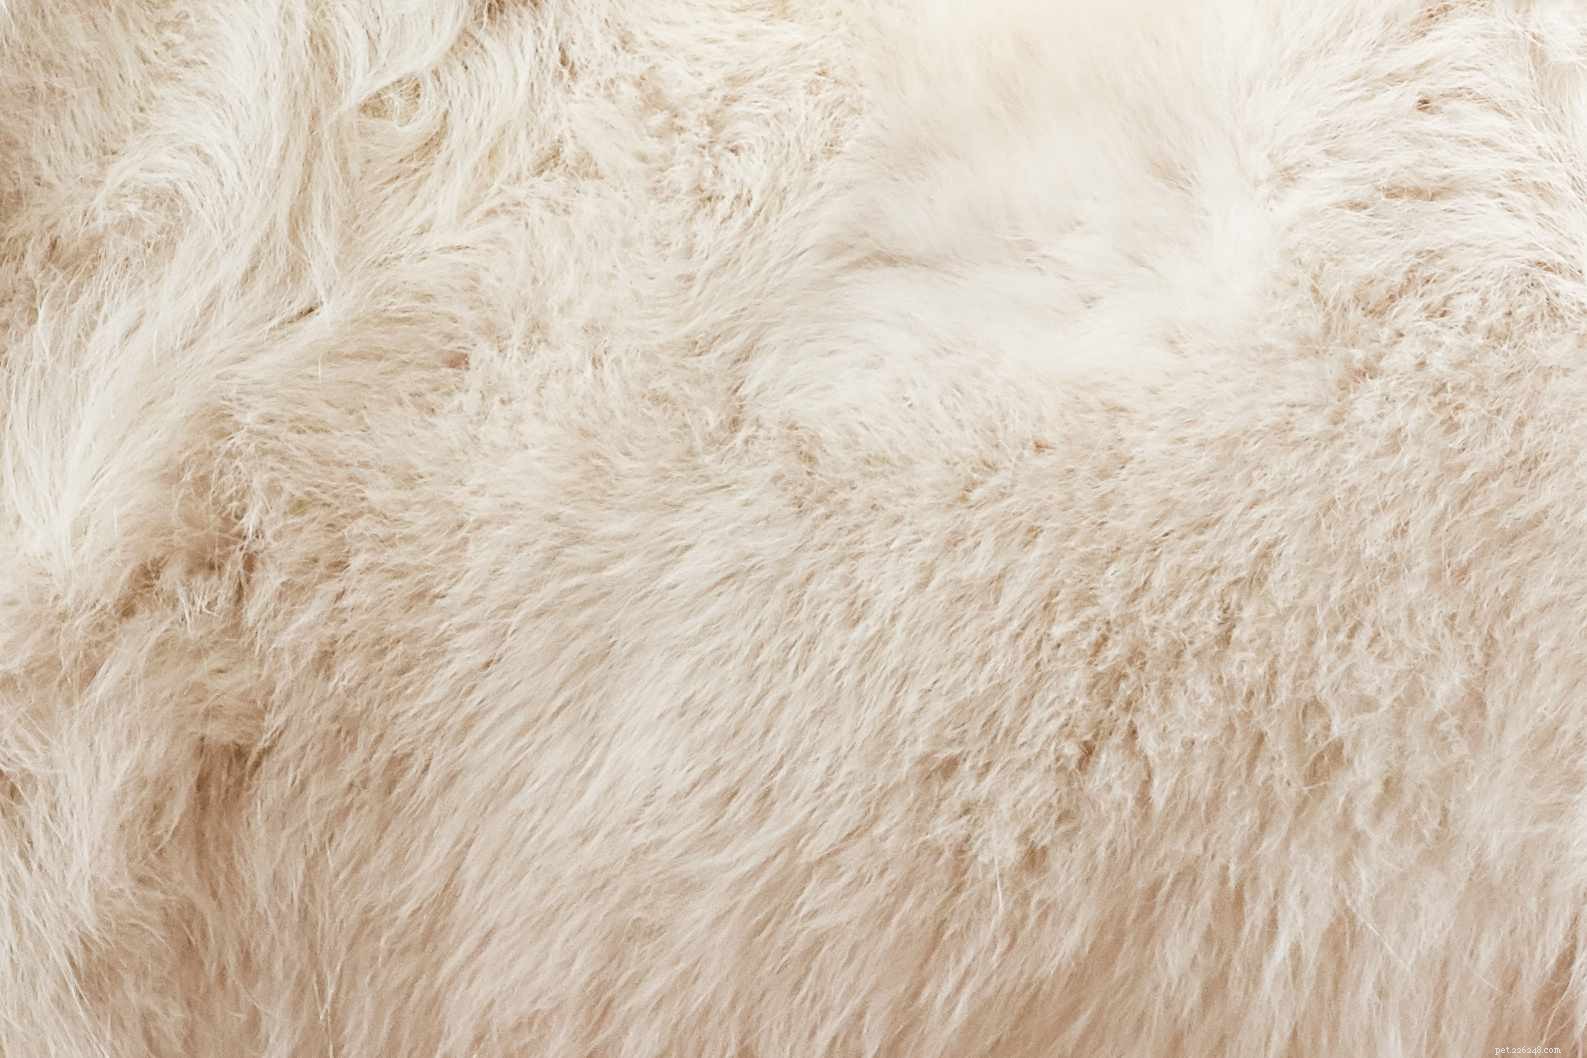 Samoyed（Sammie）：Dog Breed Profile